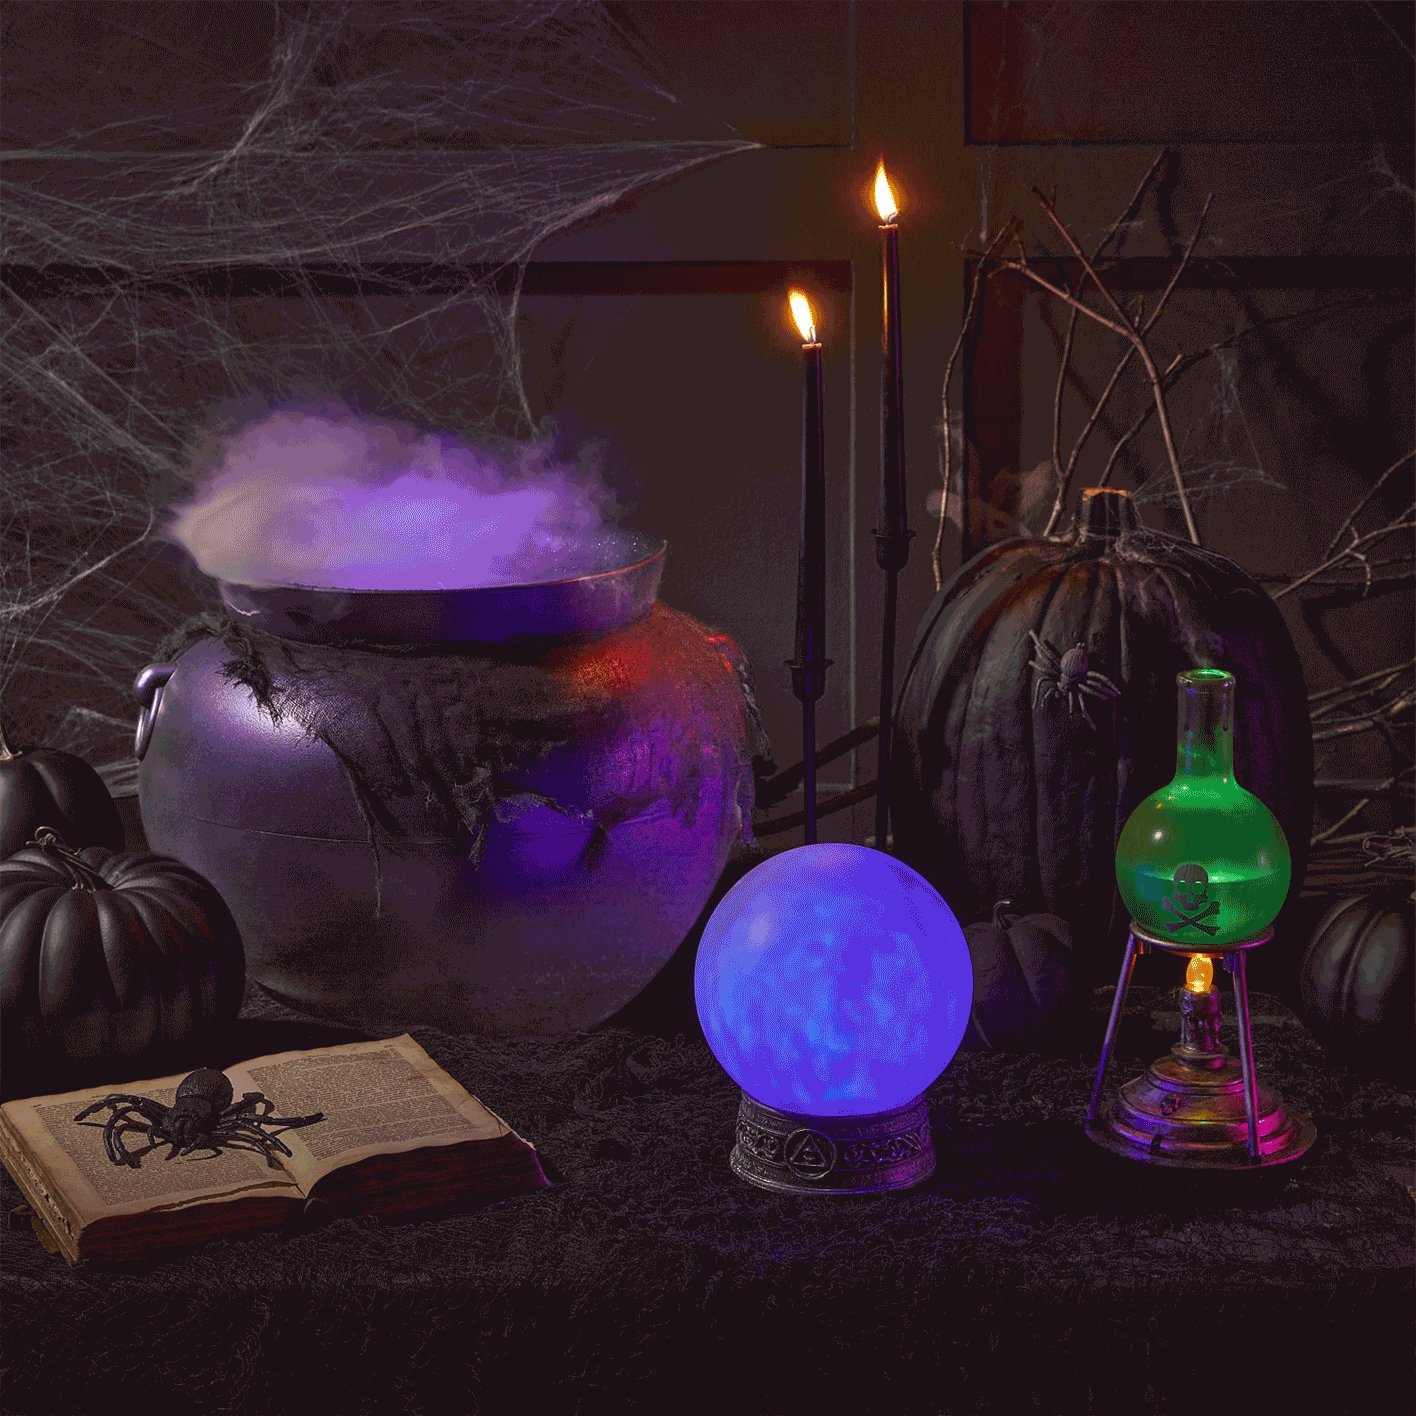 Misting Cauldron and Halloween decor on table.